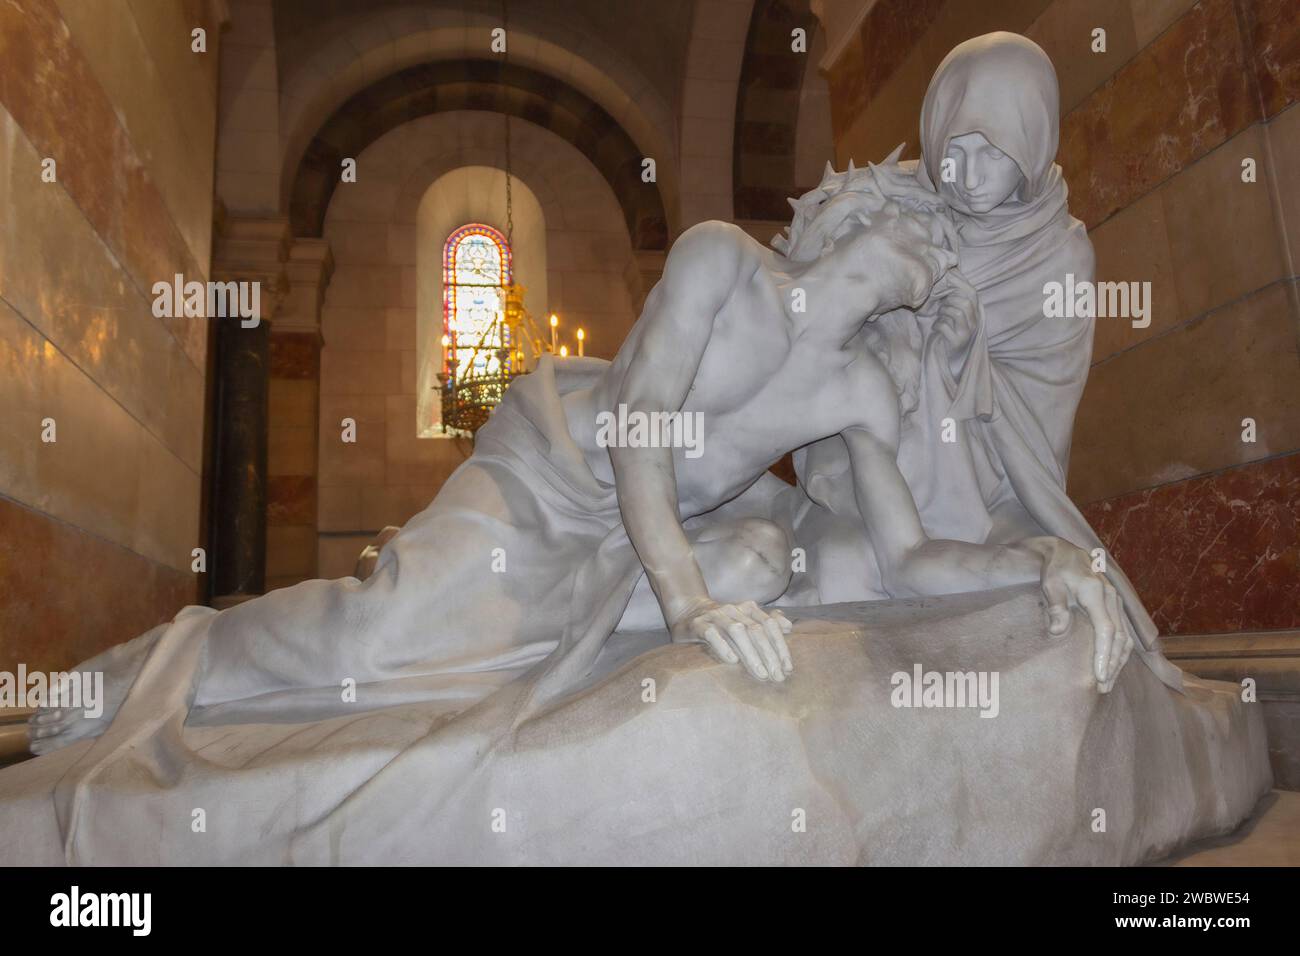 Cattedrale di Marsiglia, Marsiglia, Francia. Statua di Maria e Gesù dopo la crocifissione. Foto Stock